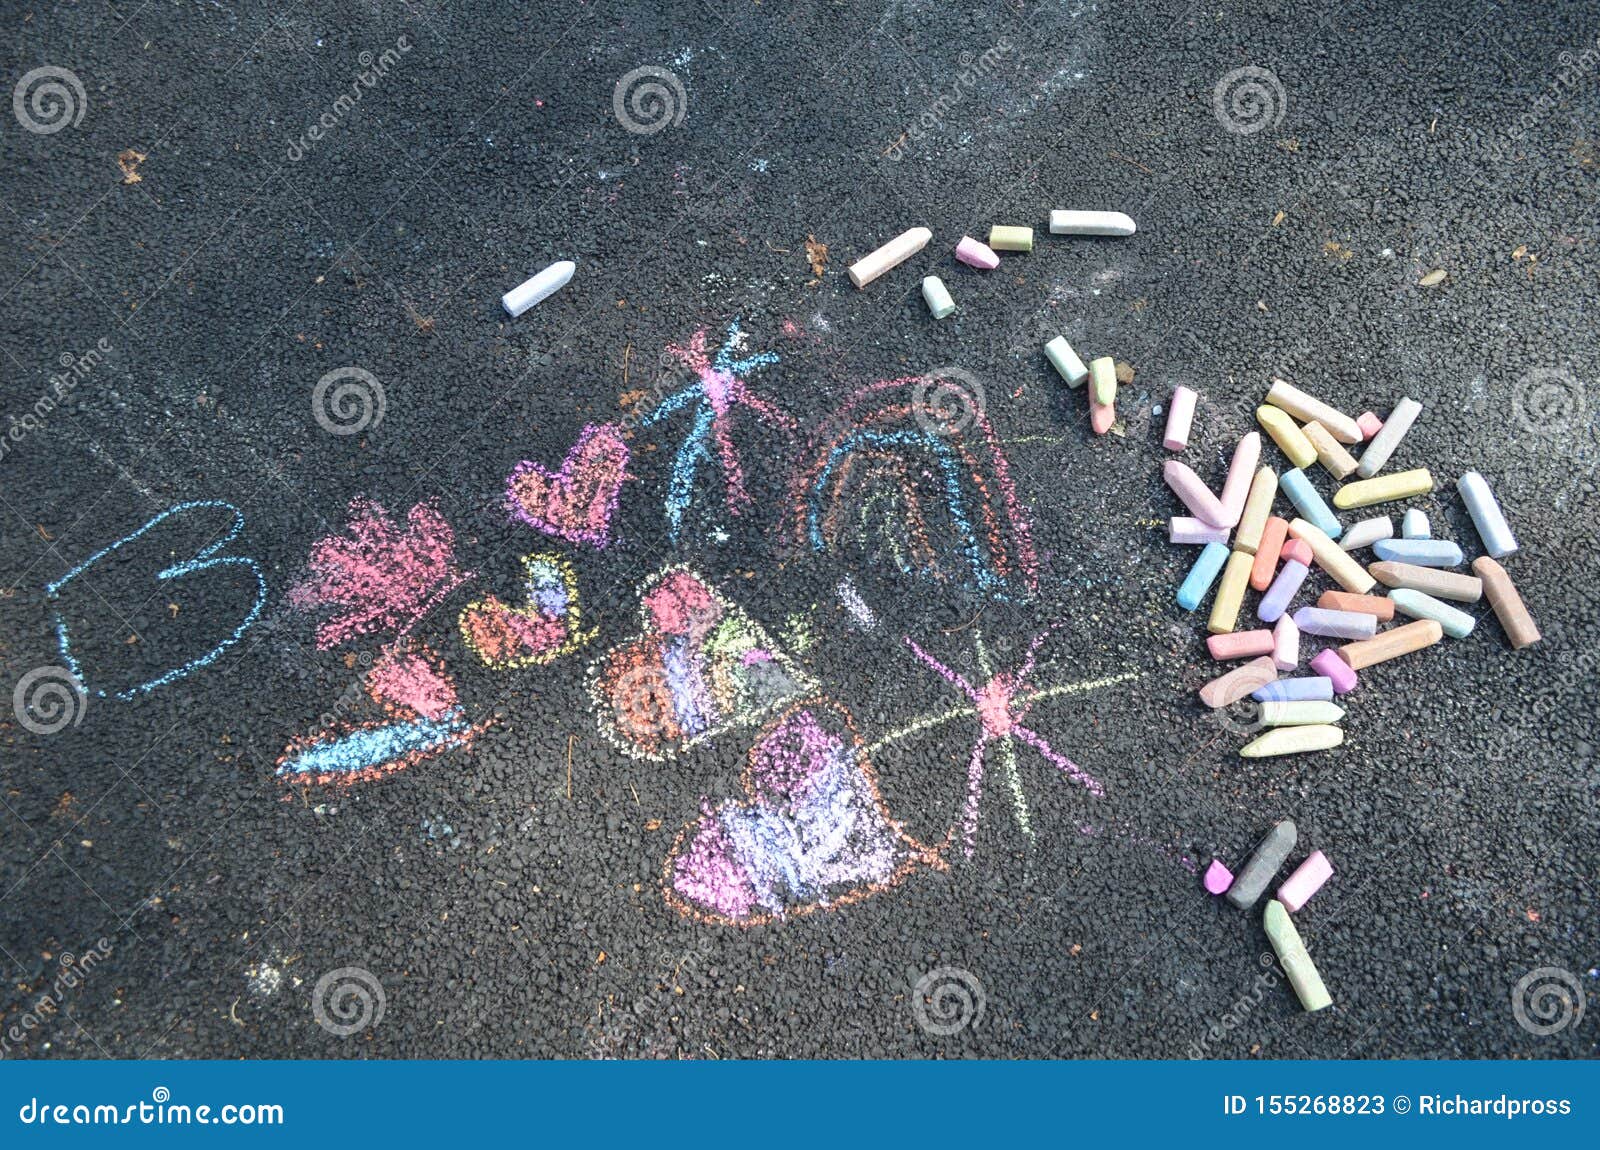 colorful sidewalk chalk sketch